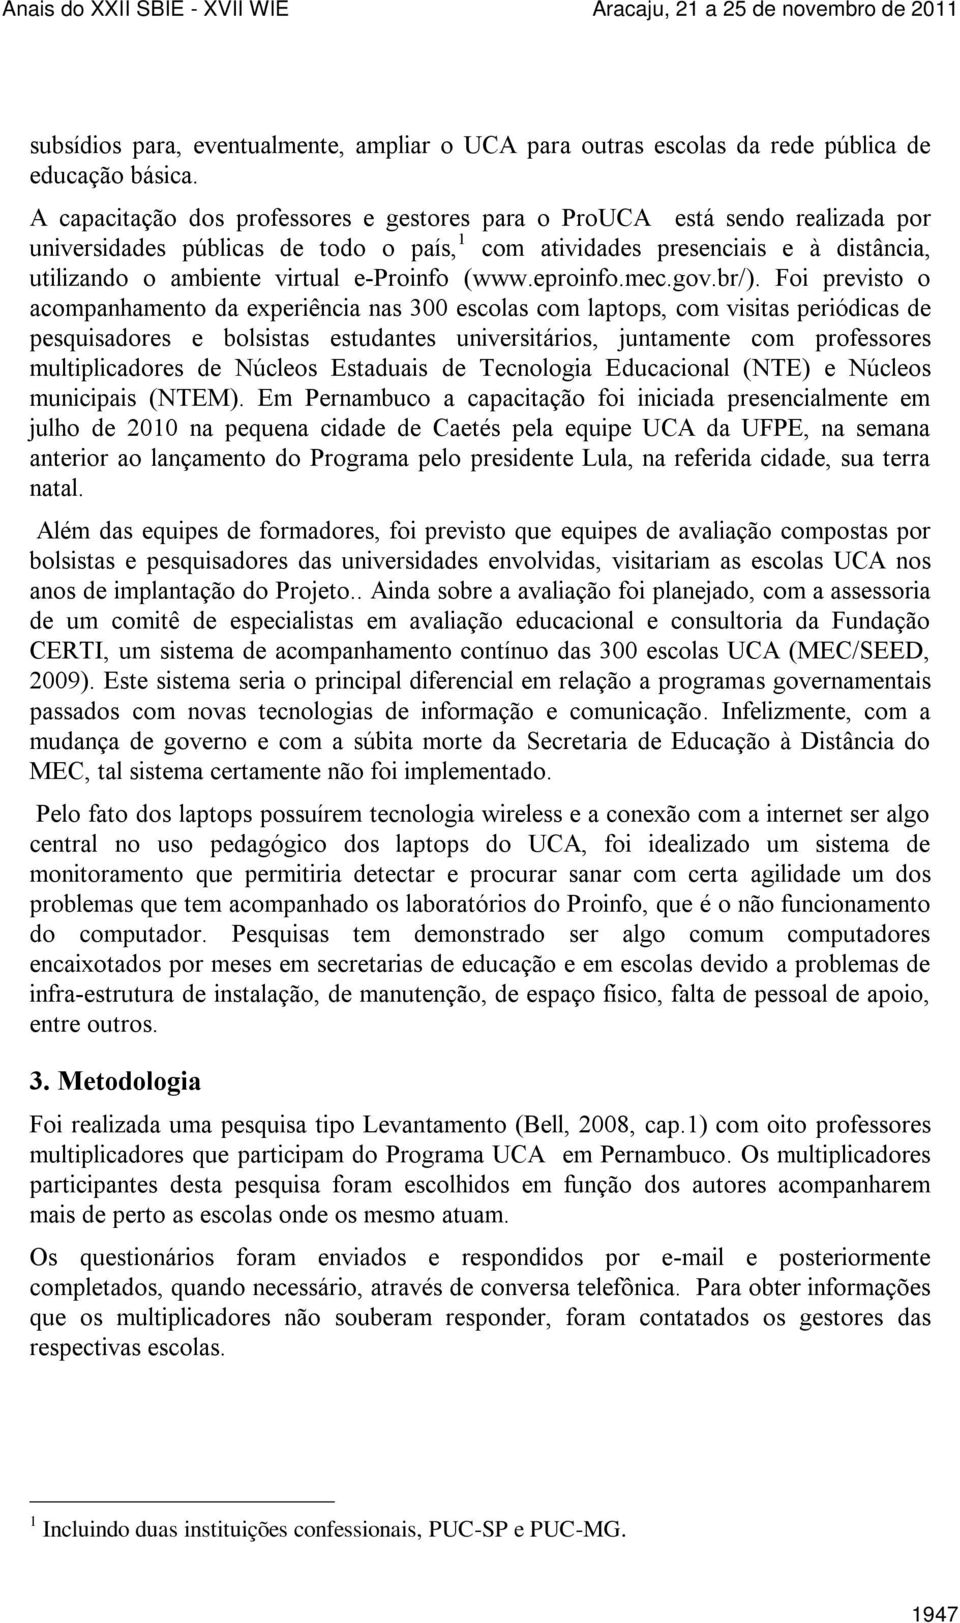 e-proinfo (www.eproinfo.mec.gov.br/).